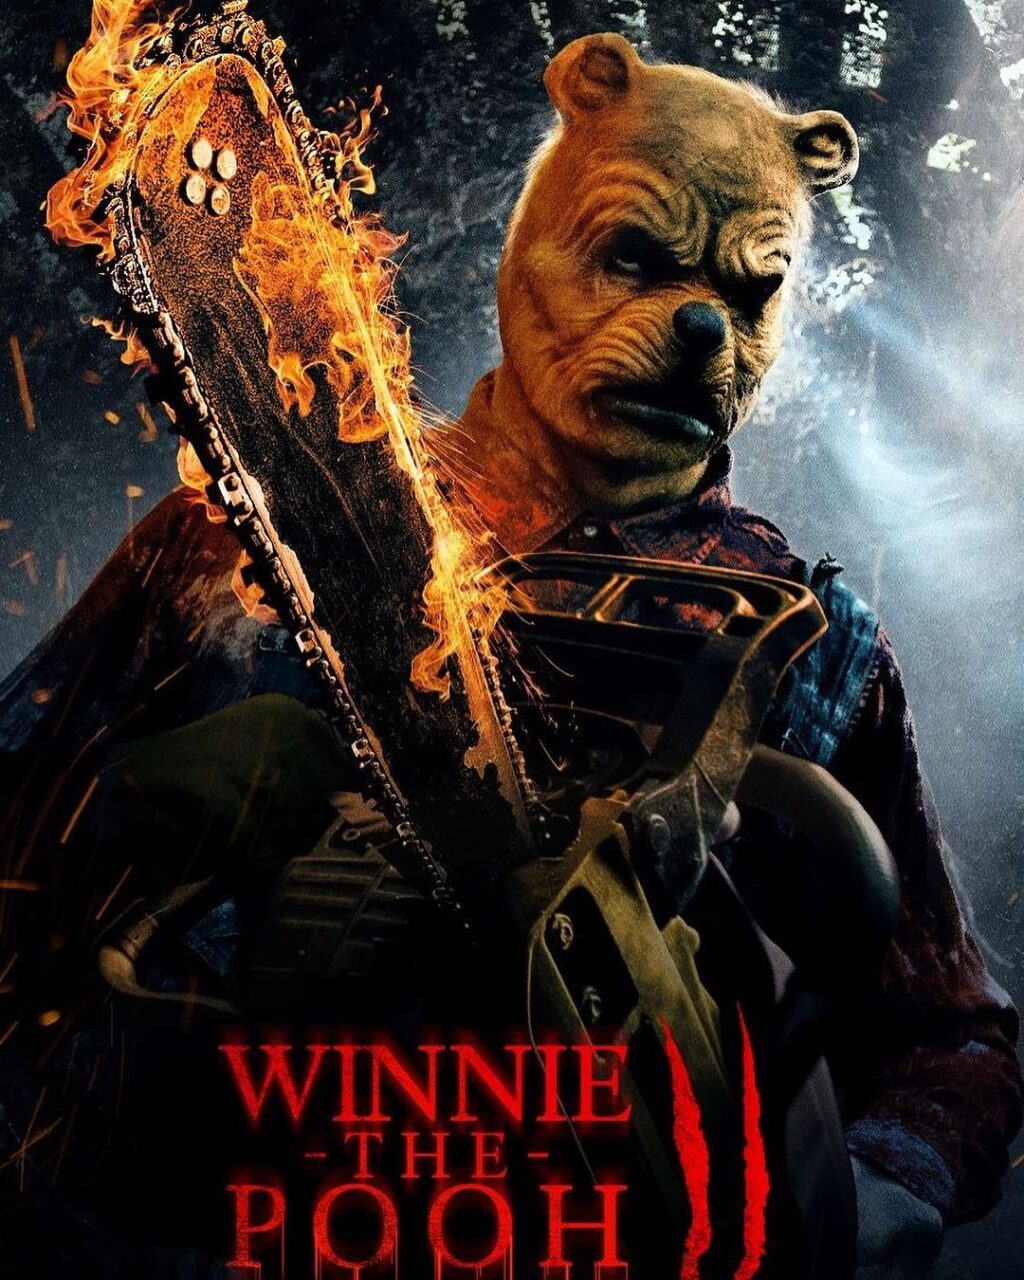 Winnie The Pooh: Miel y Sangre 2: fecha de estreno, sinopsis y reparto